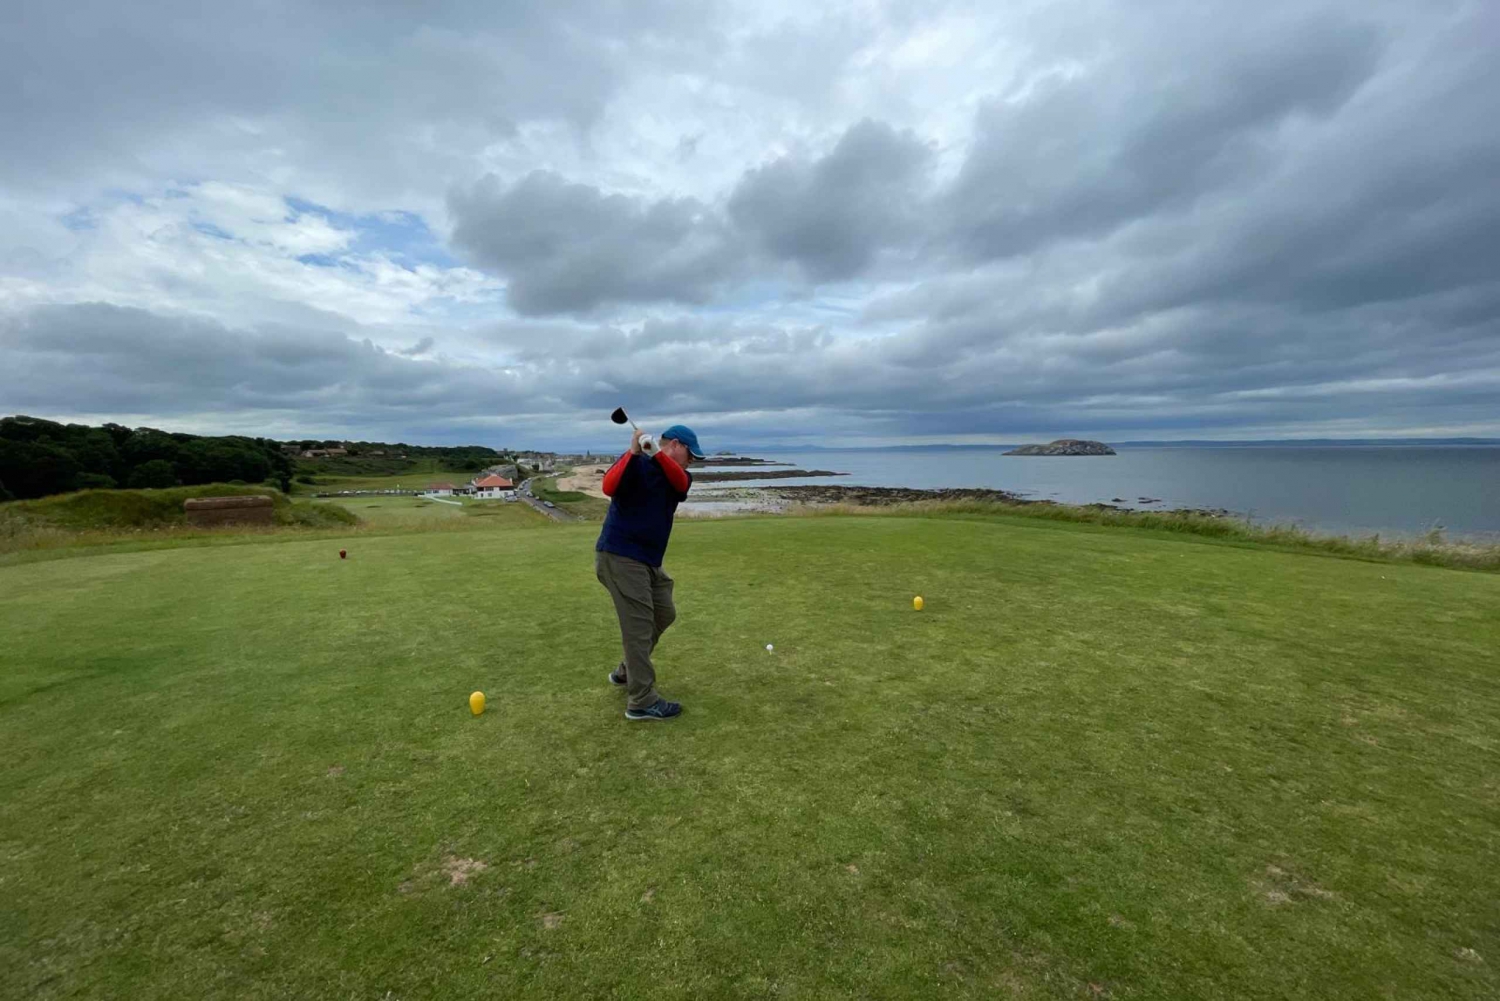 Scottish Greens : Excursion d'une journée sur un terrain de golf privé de luxe